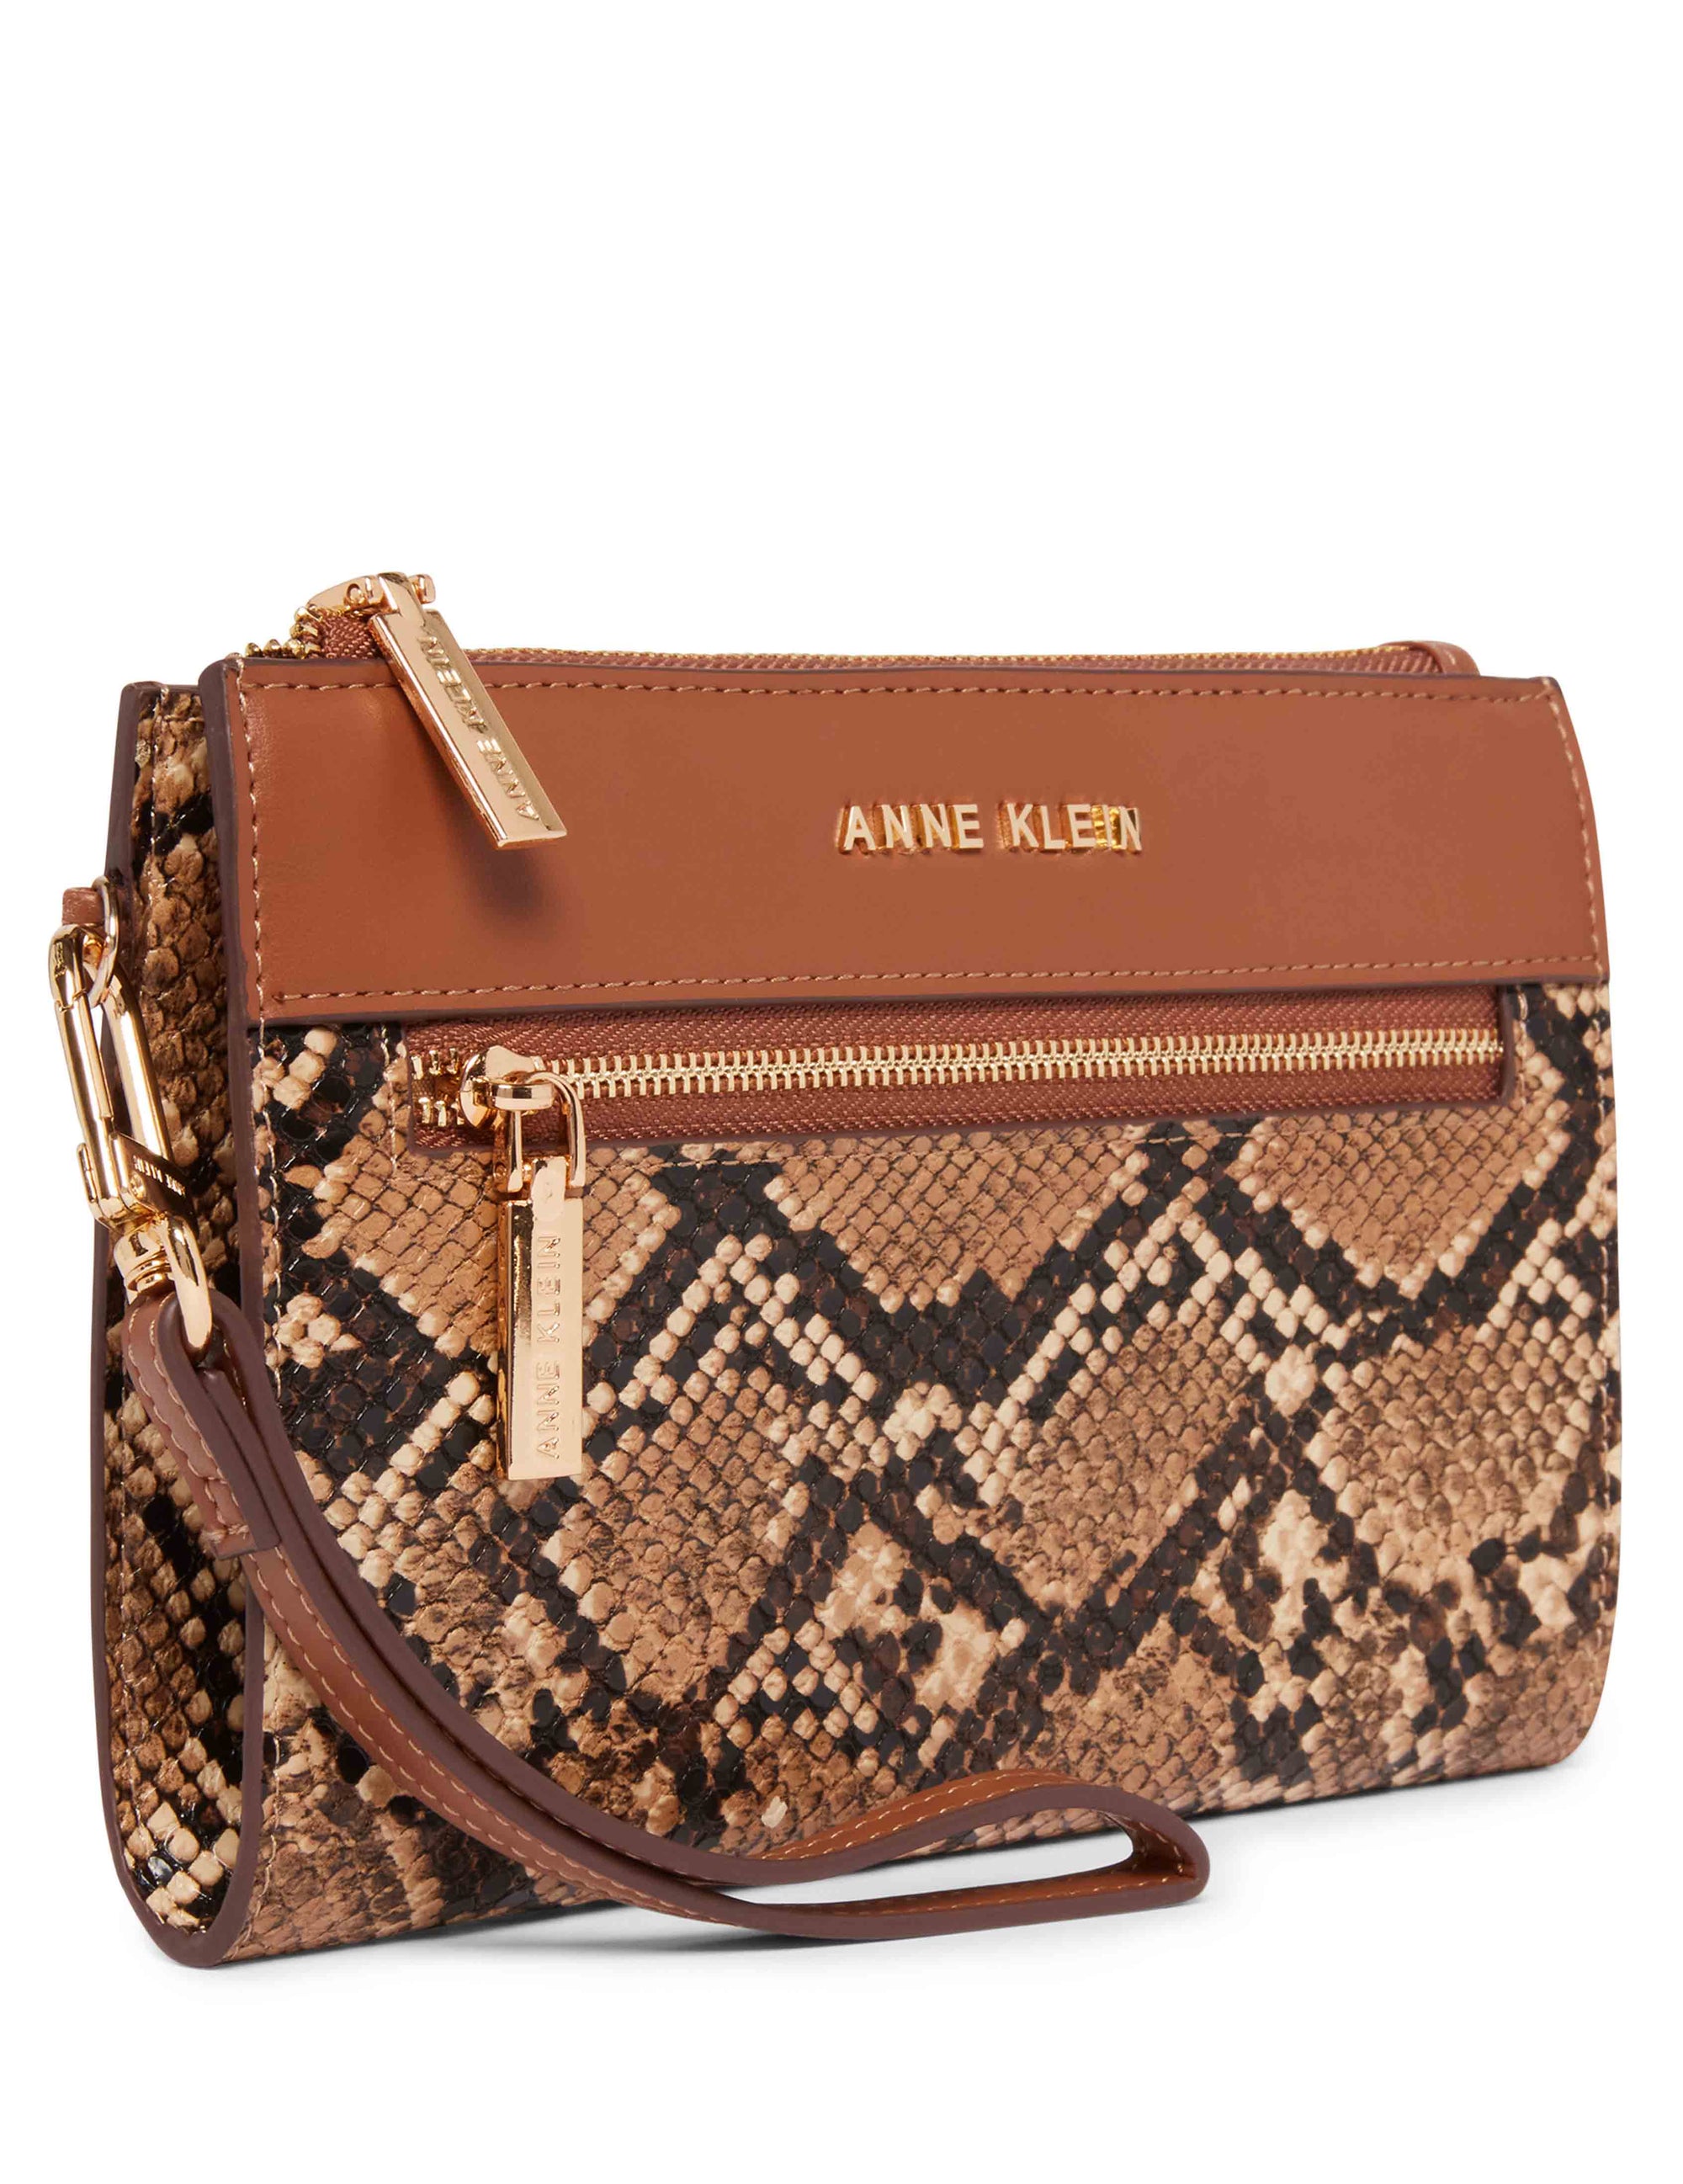 Calvin Klein Handbags Tote, Shop Online